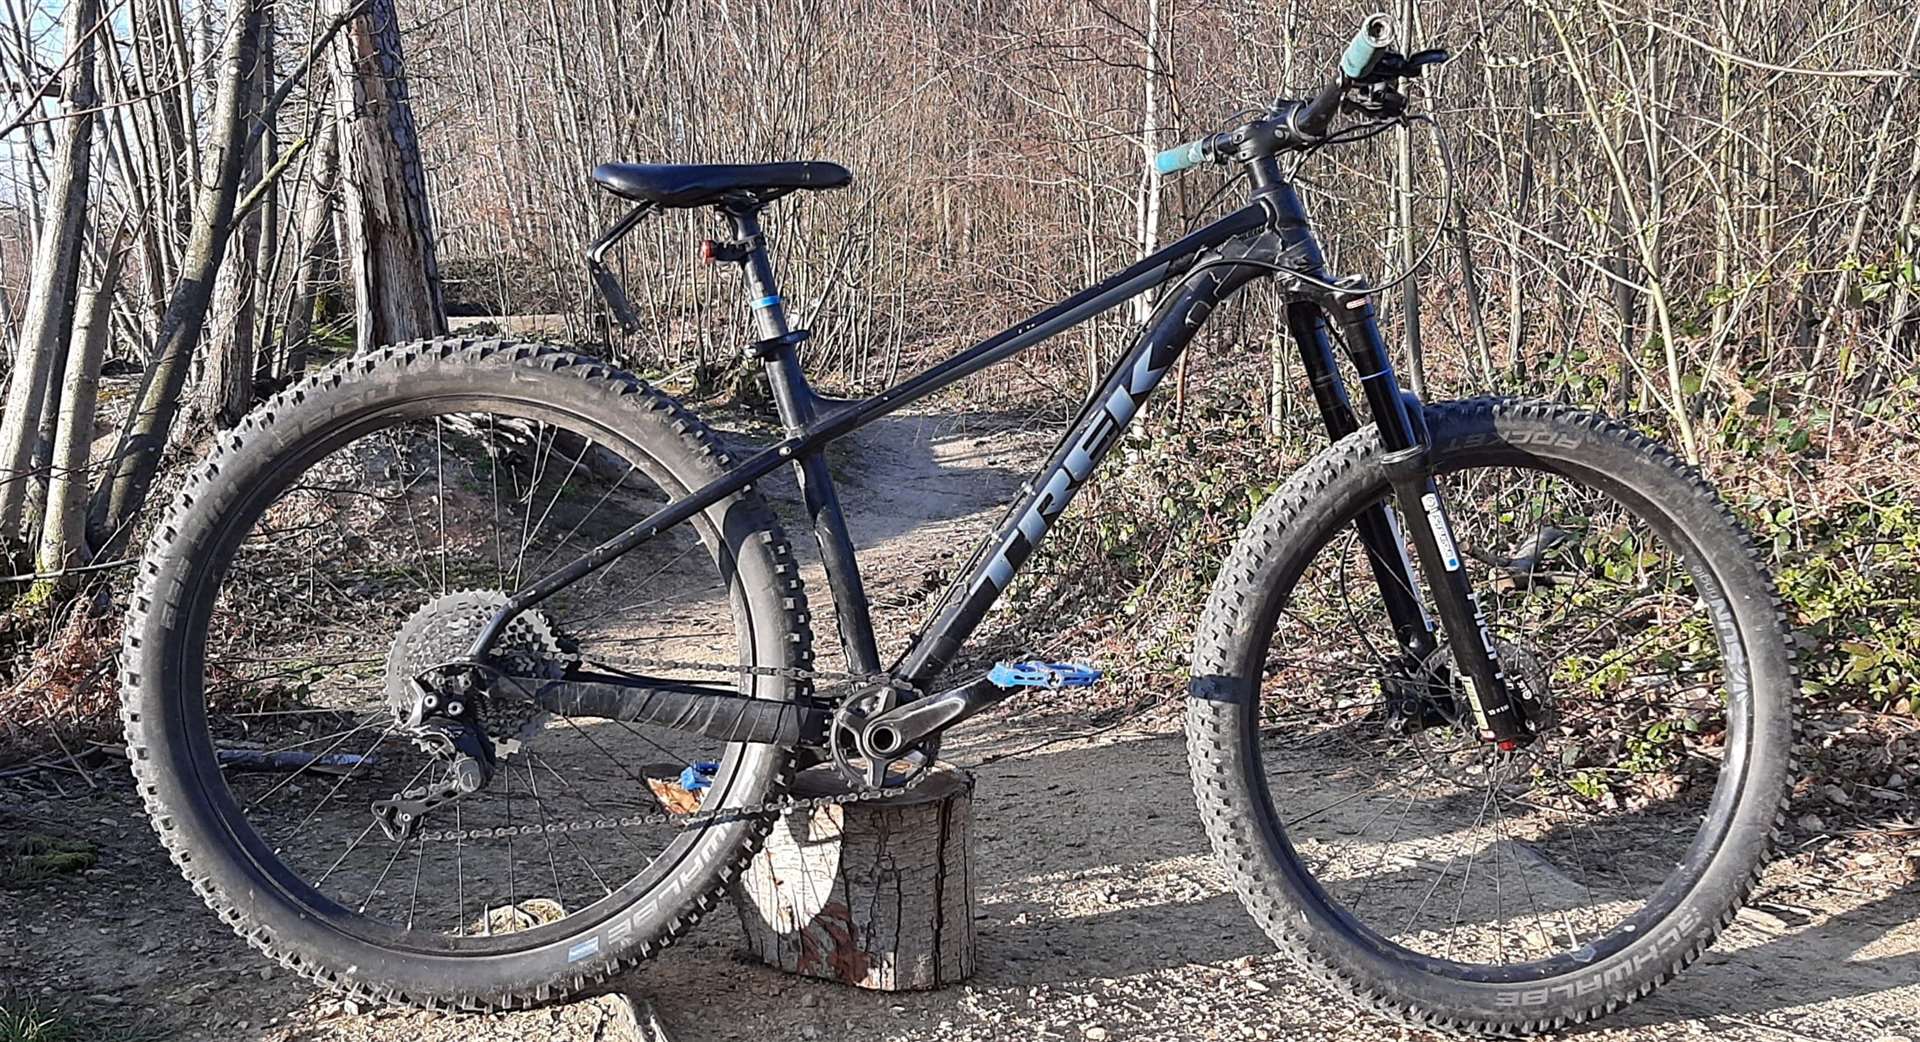 Alastair Field's stolen bike